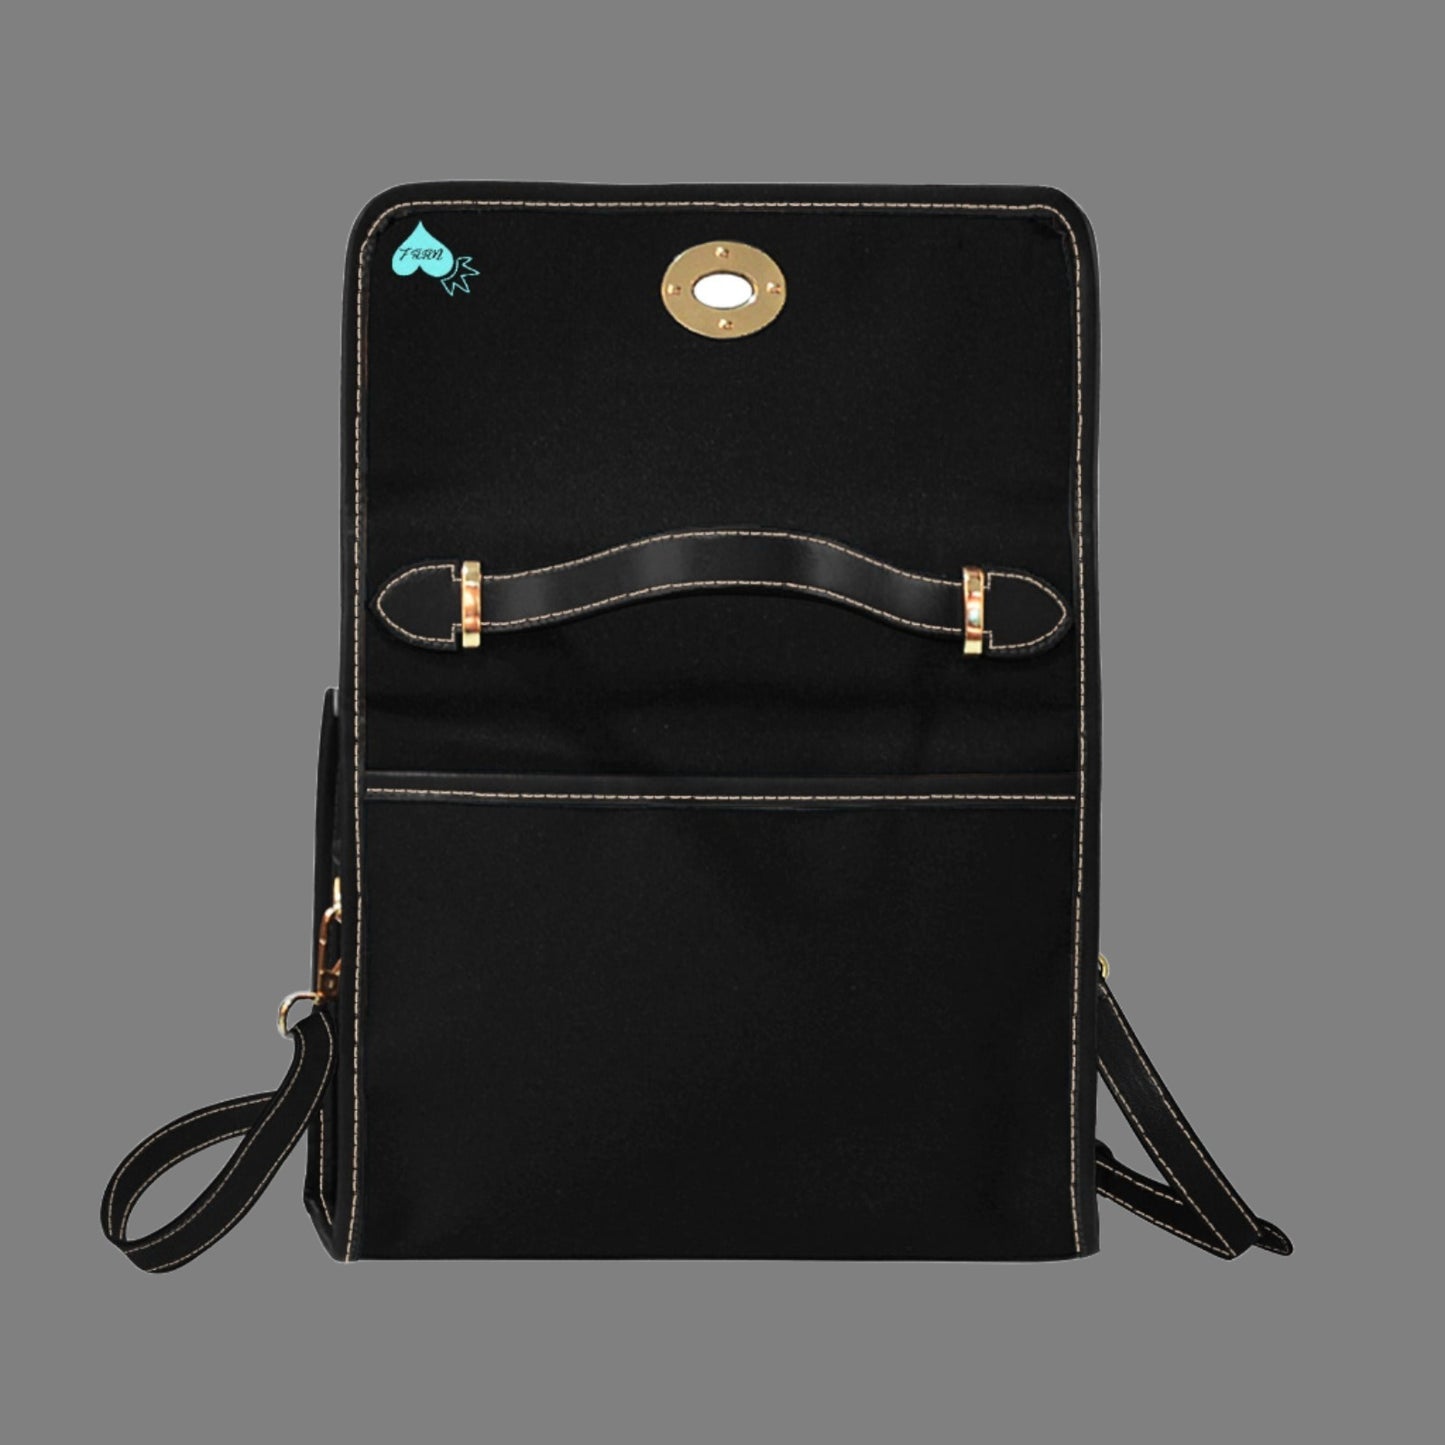 Exquisite Lock Bag